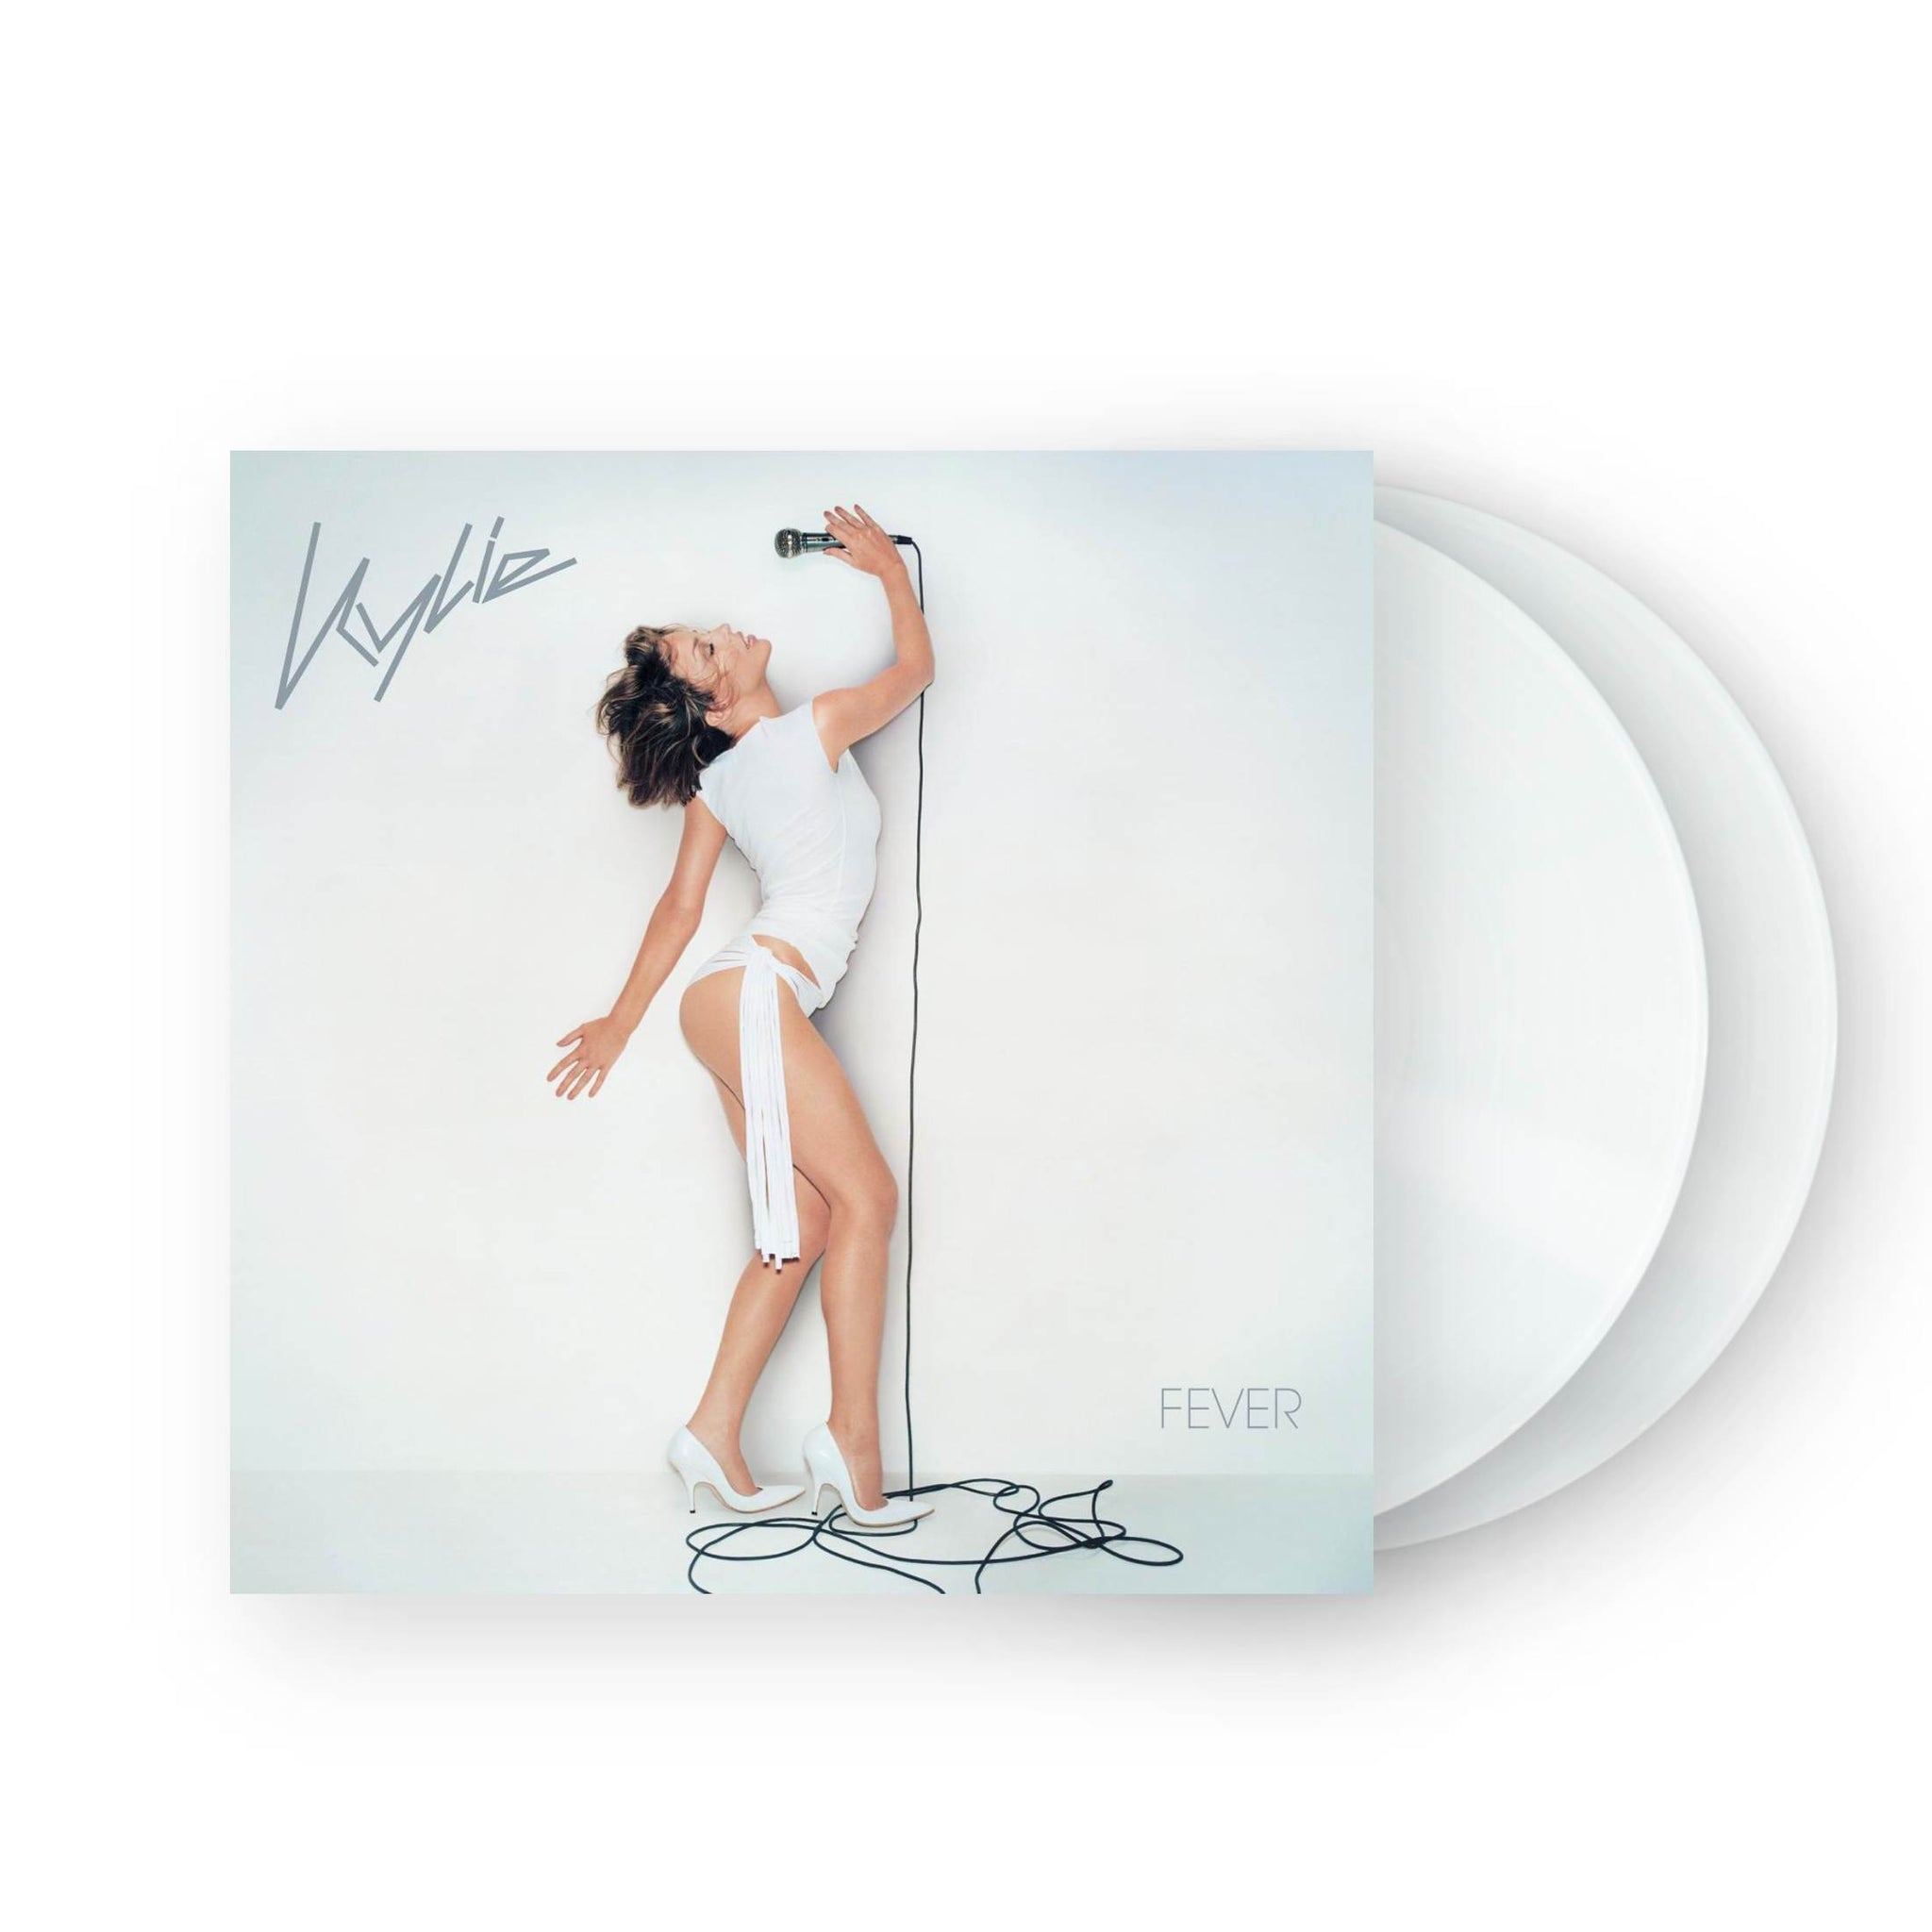 Kylie - Fever 2xLP (White Vinyl)